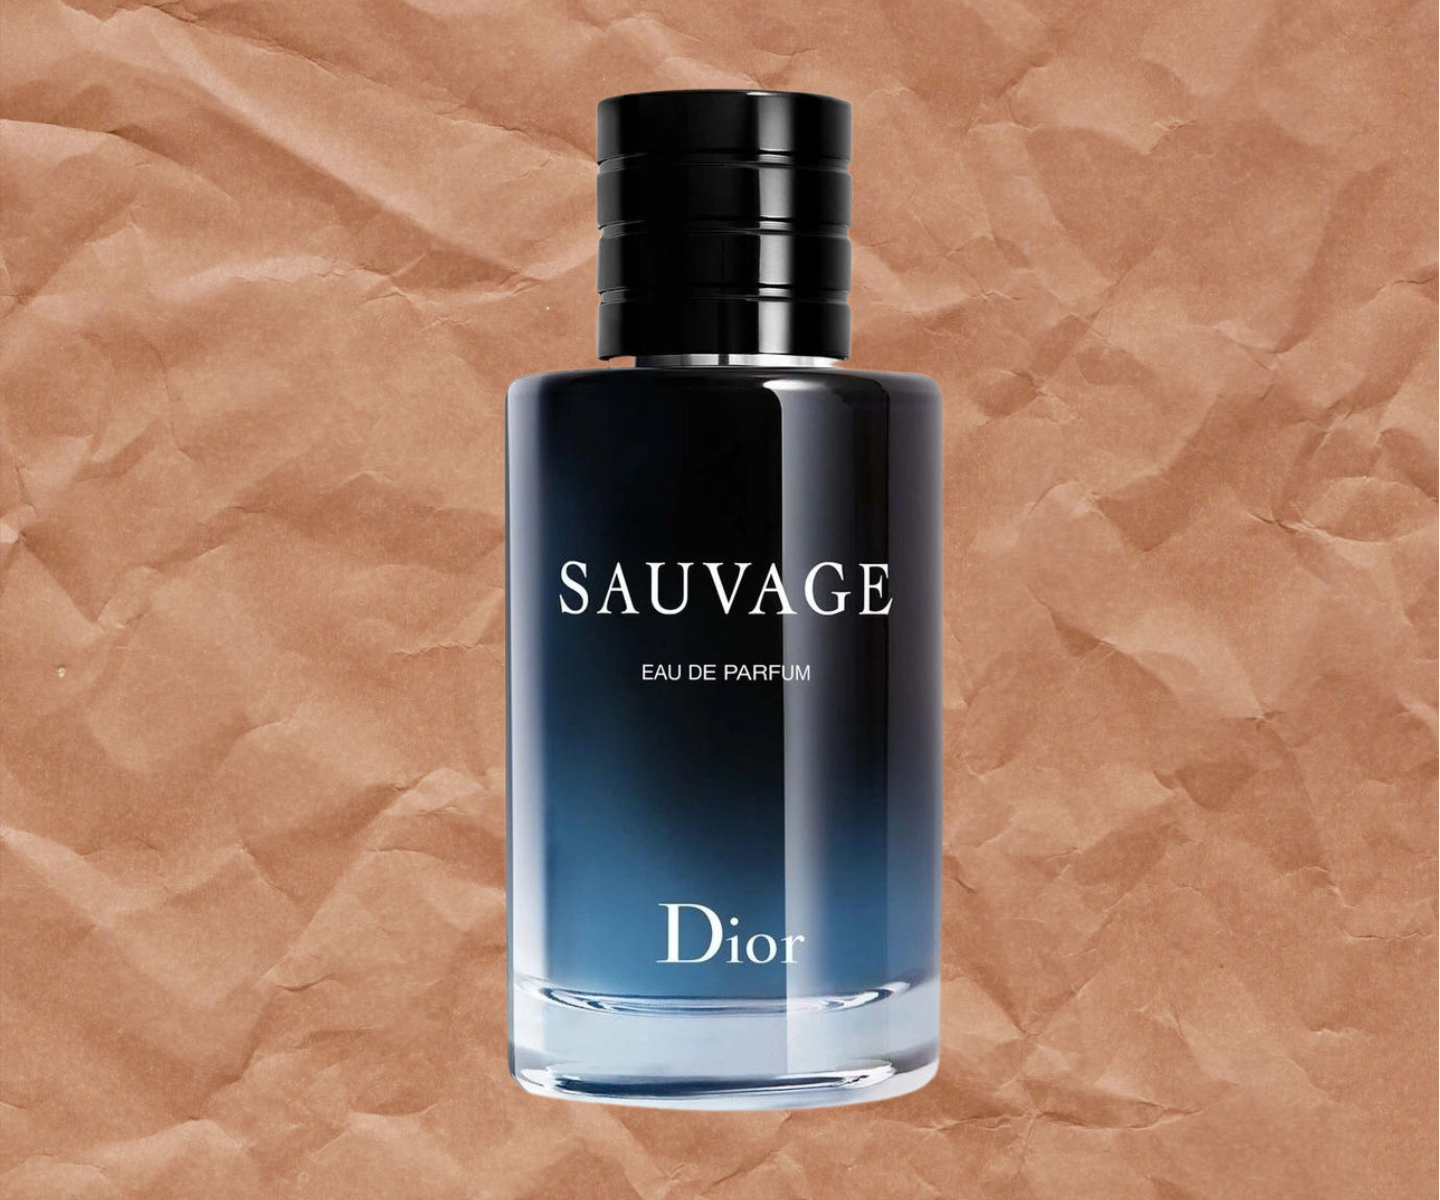 Top 5 Dior Fragrances for Men